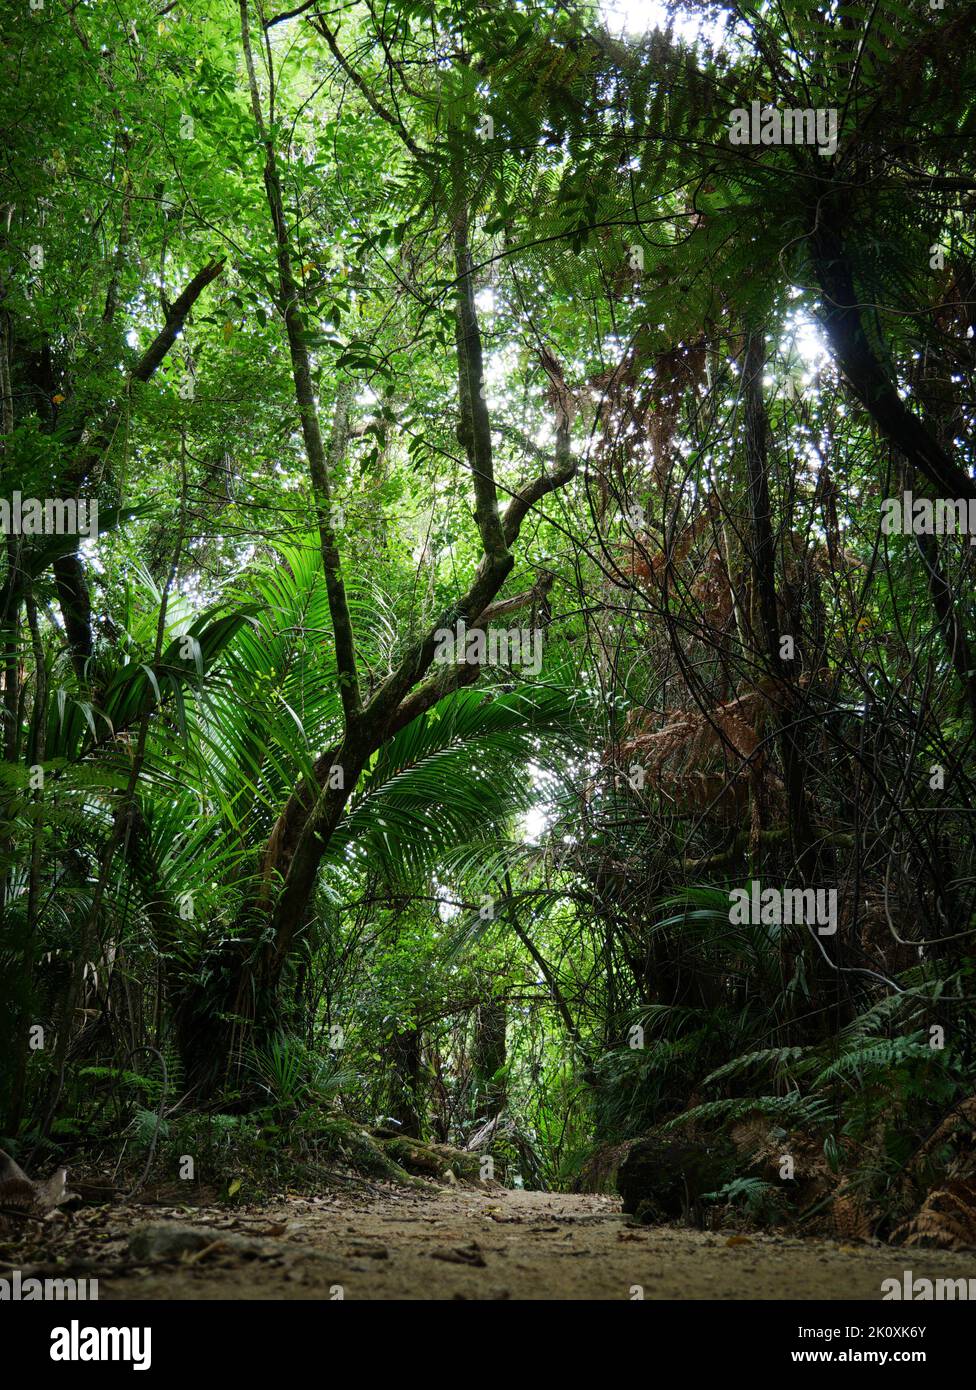 Wanderweg inmitten vom neuseeländischen Regenwald zwischen Baumfarnen - Farnbäume auf dem Weg in den neuseeländischen Regenwald Stockfoto